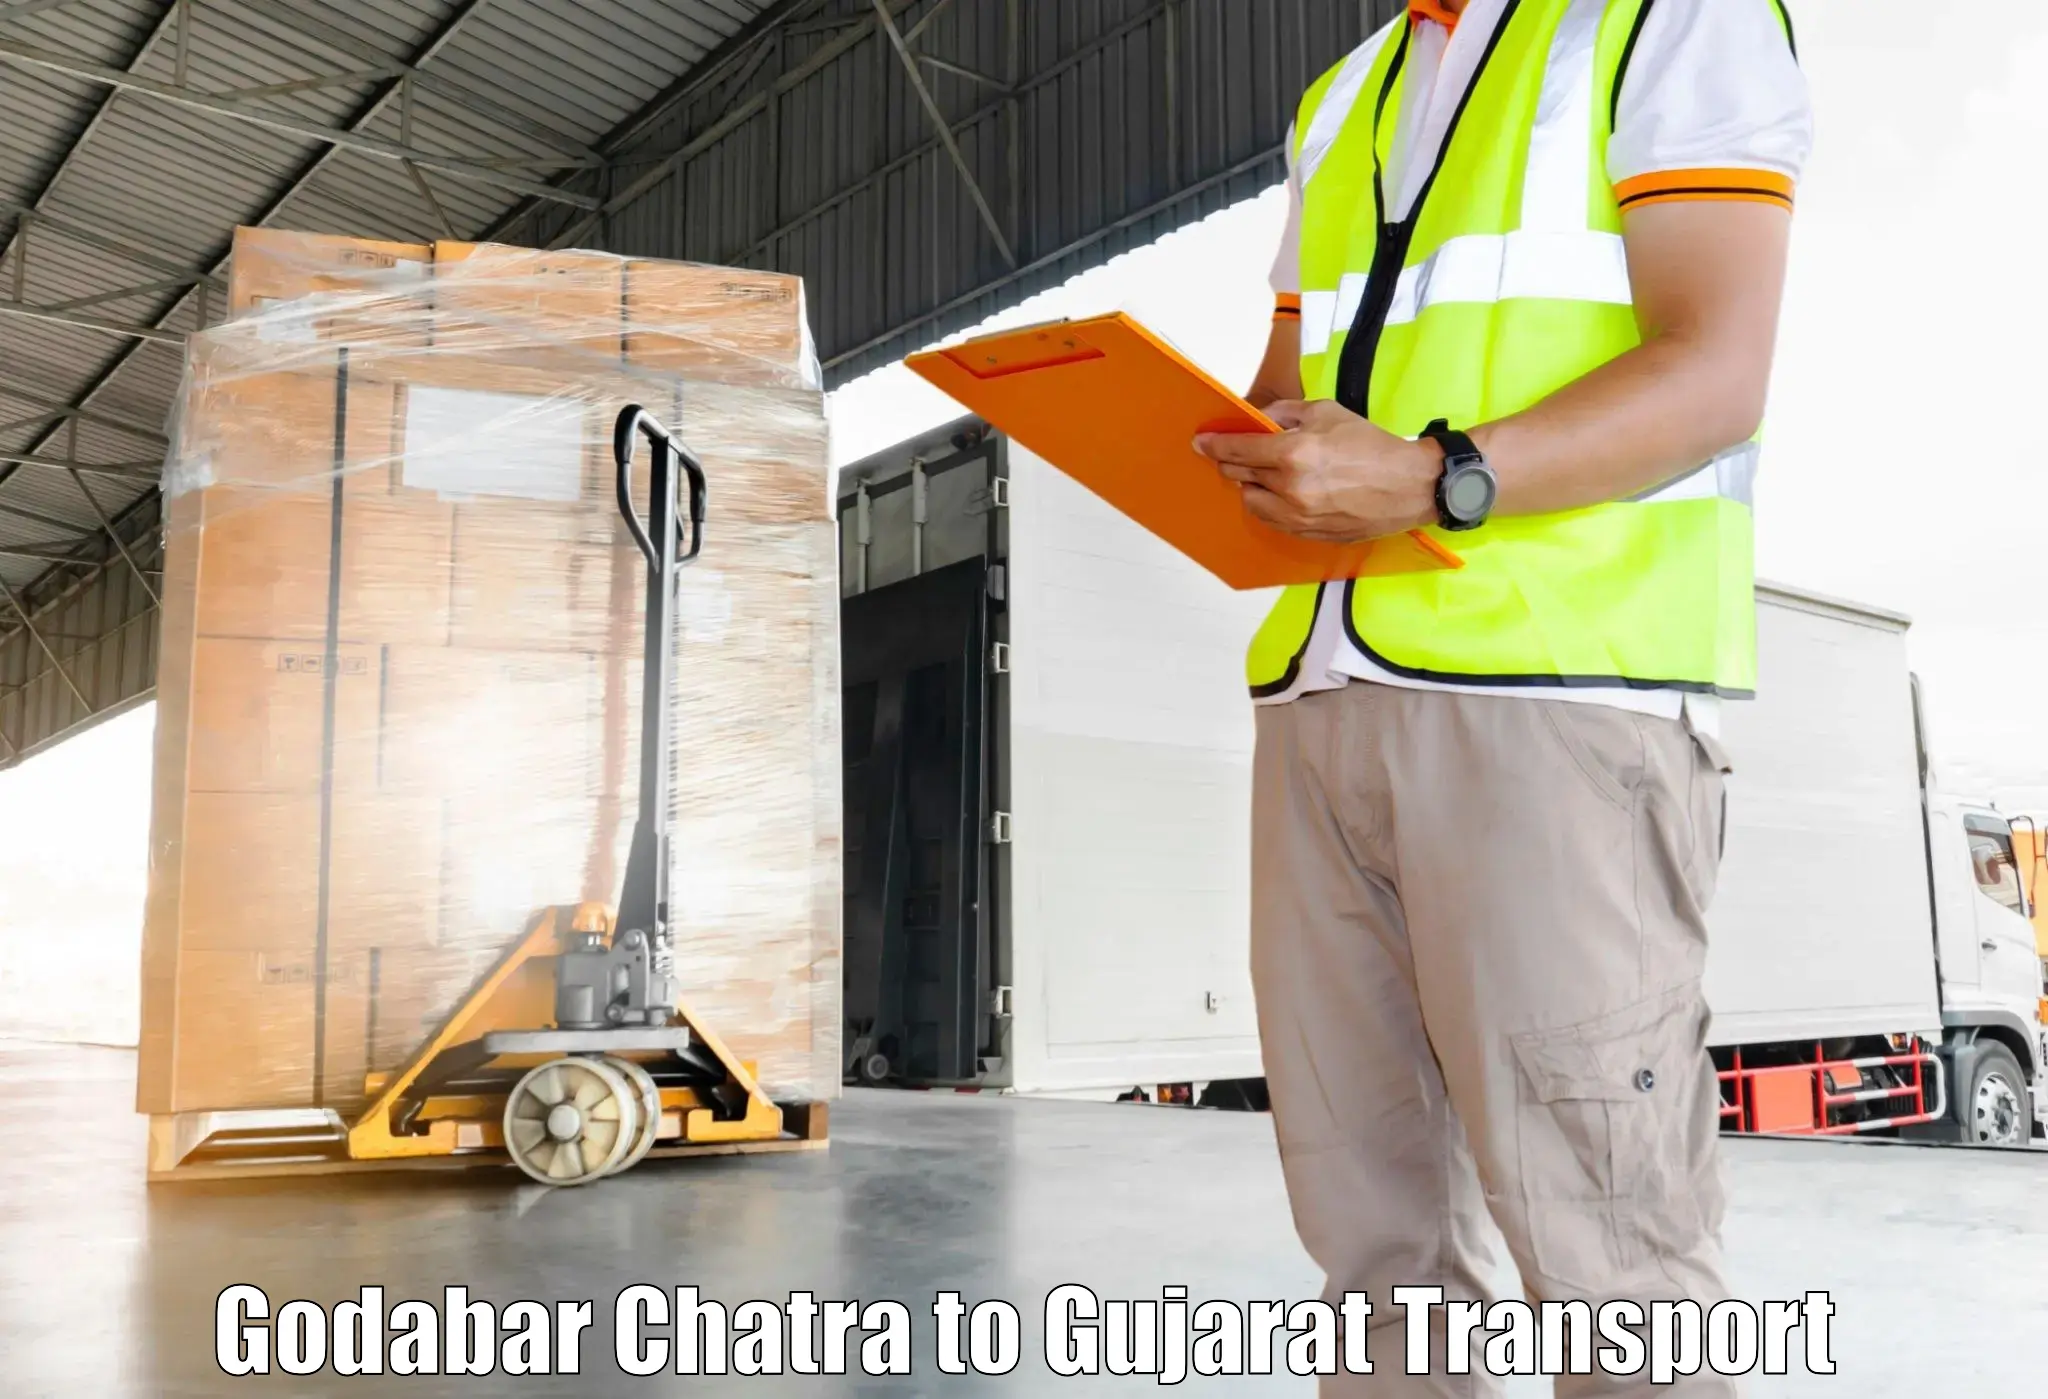 Goods transport services Godabar Chatra to Modasa